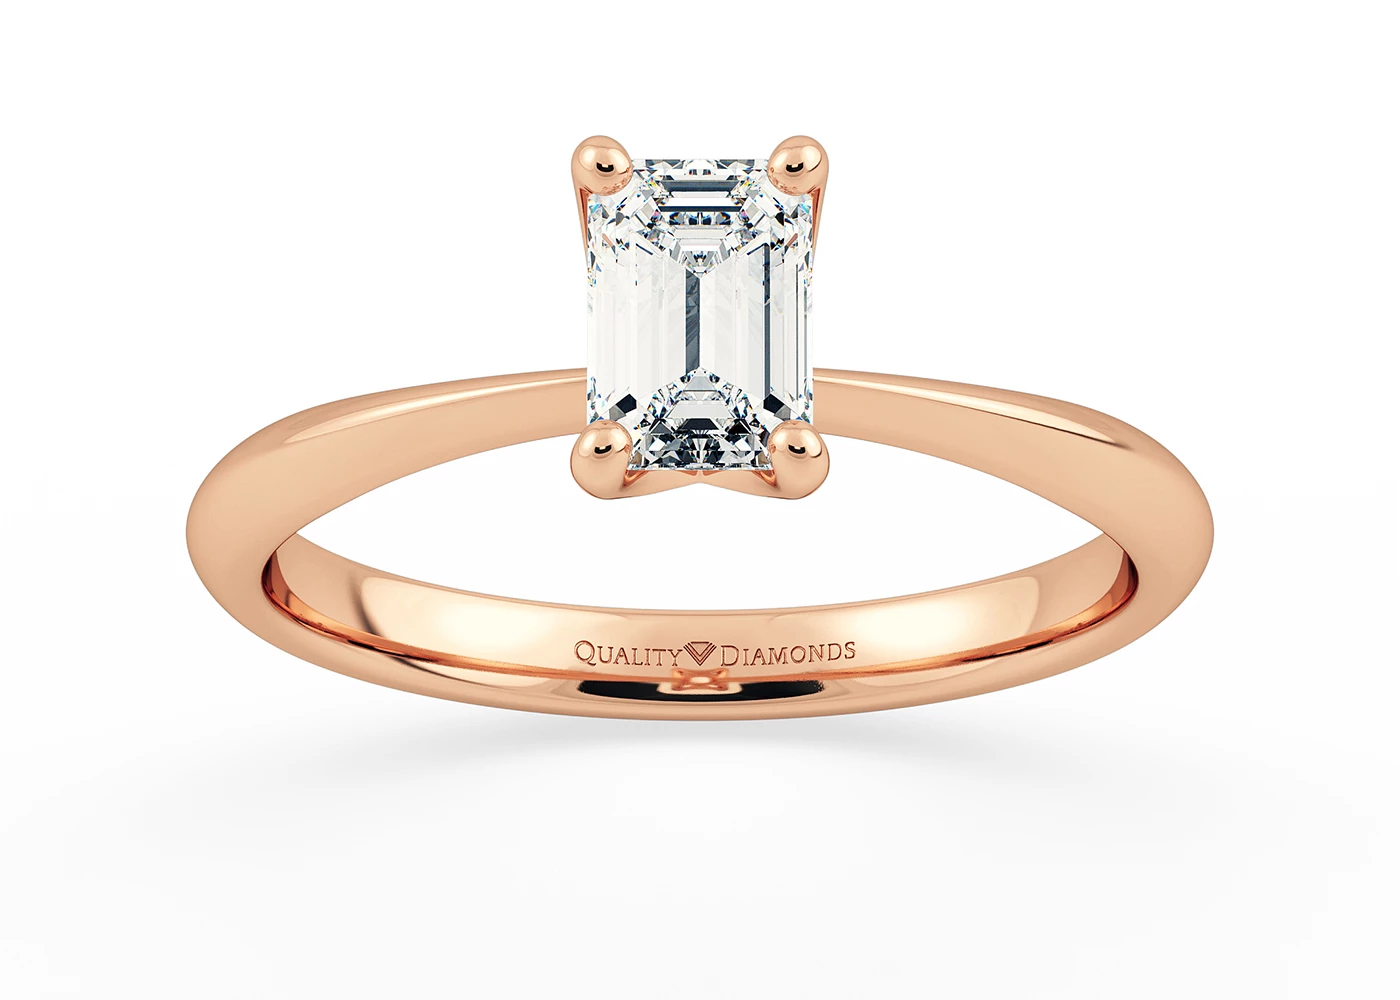 Emerald Amorette Diamond Ring in 9K Rose Gold